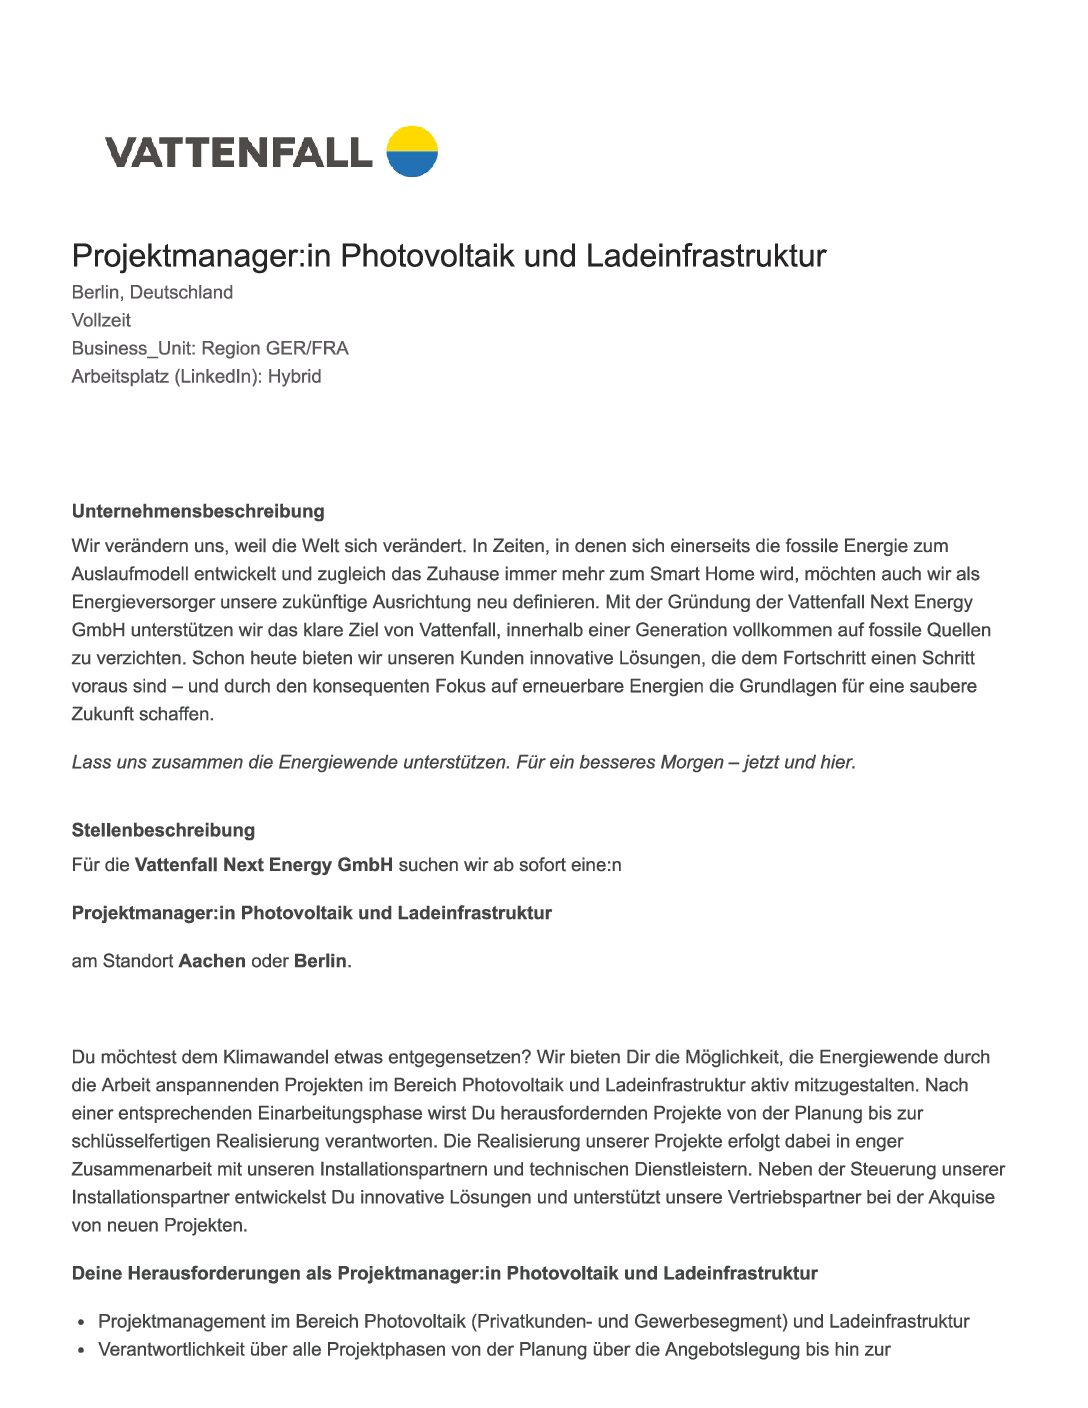 Vattenfall_Projektmanager-Photovoltaik-und-Ladeinfrastruktur-4-pdf  